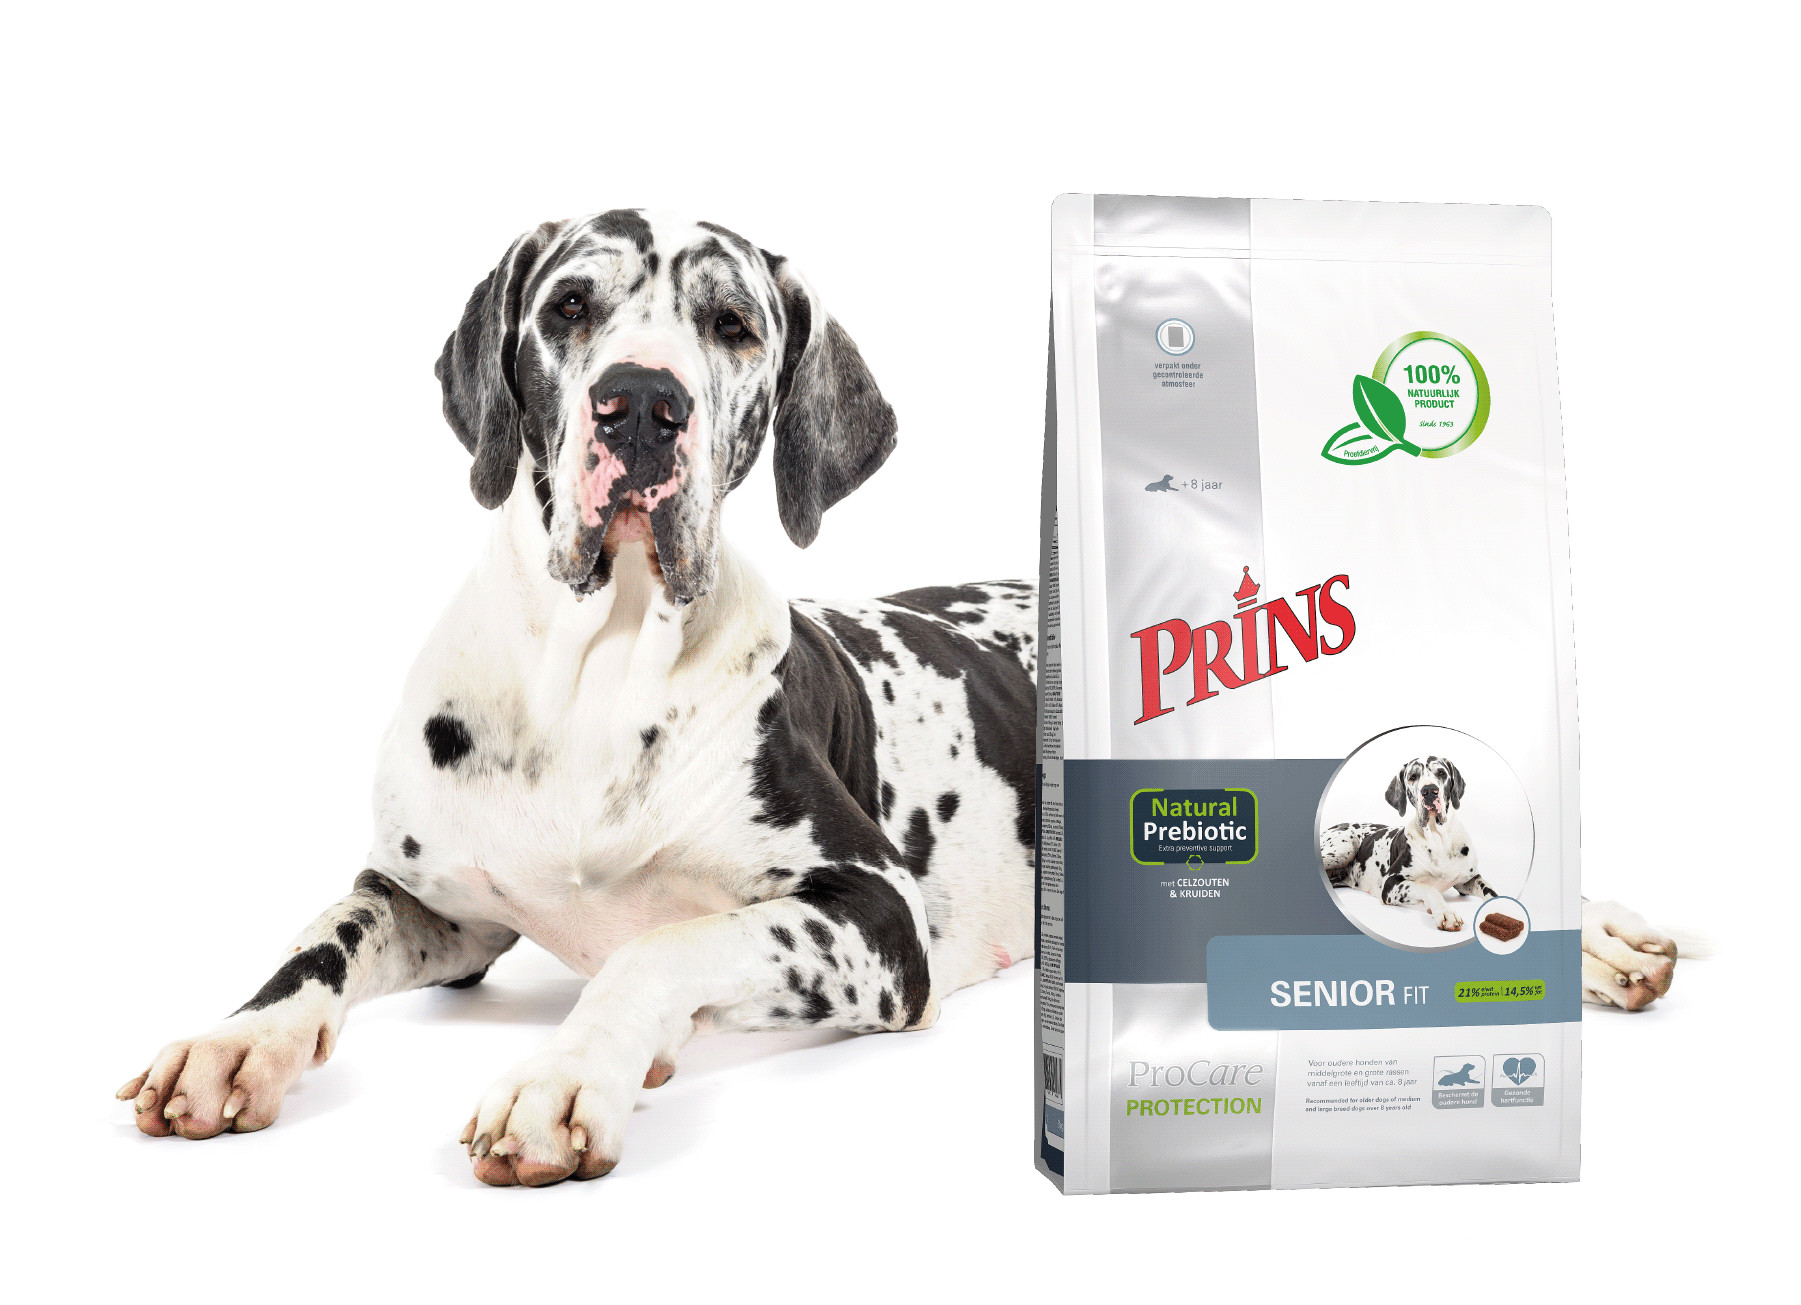 Prins ProCare Protection Santé Senior pour chien